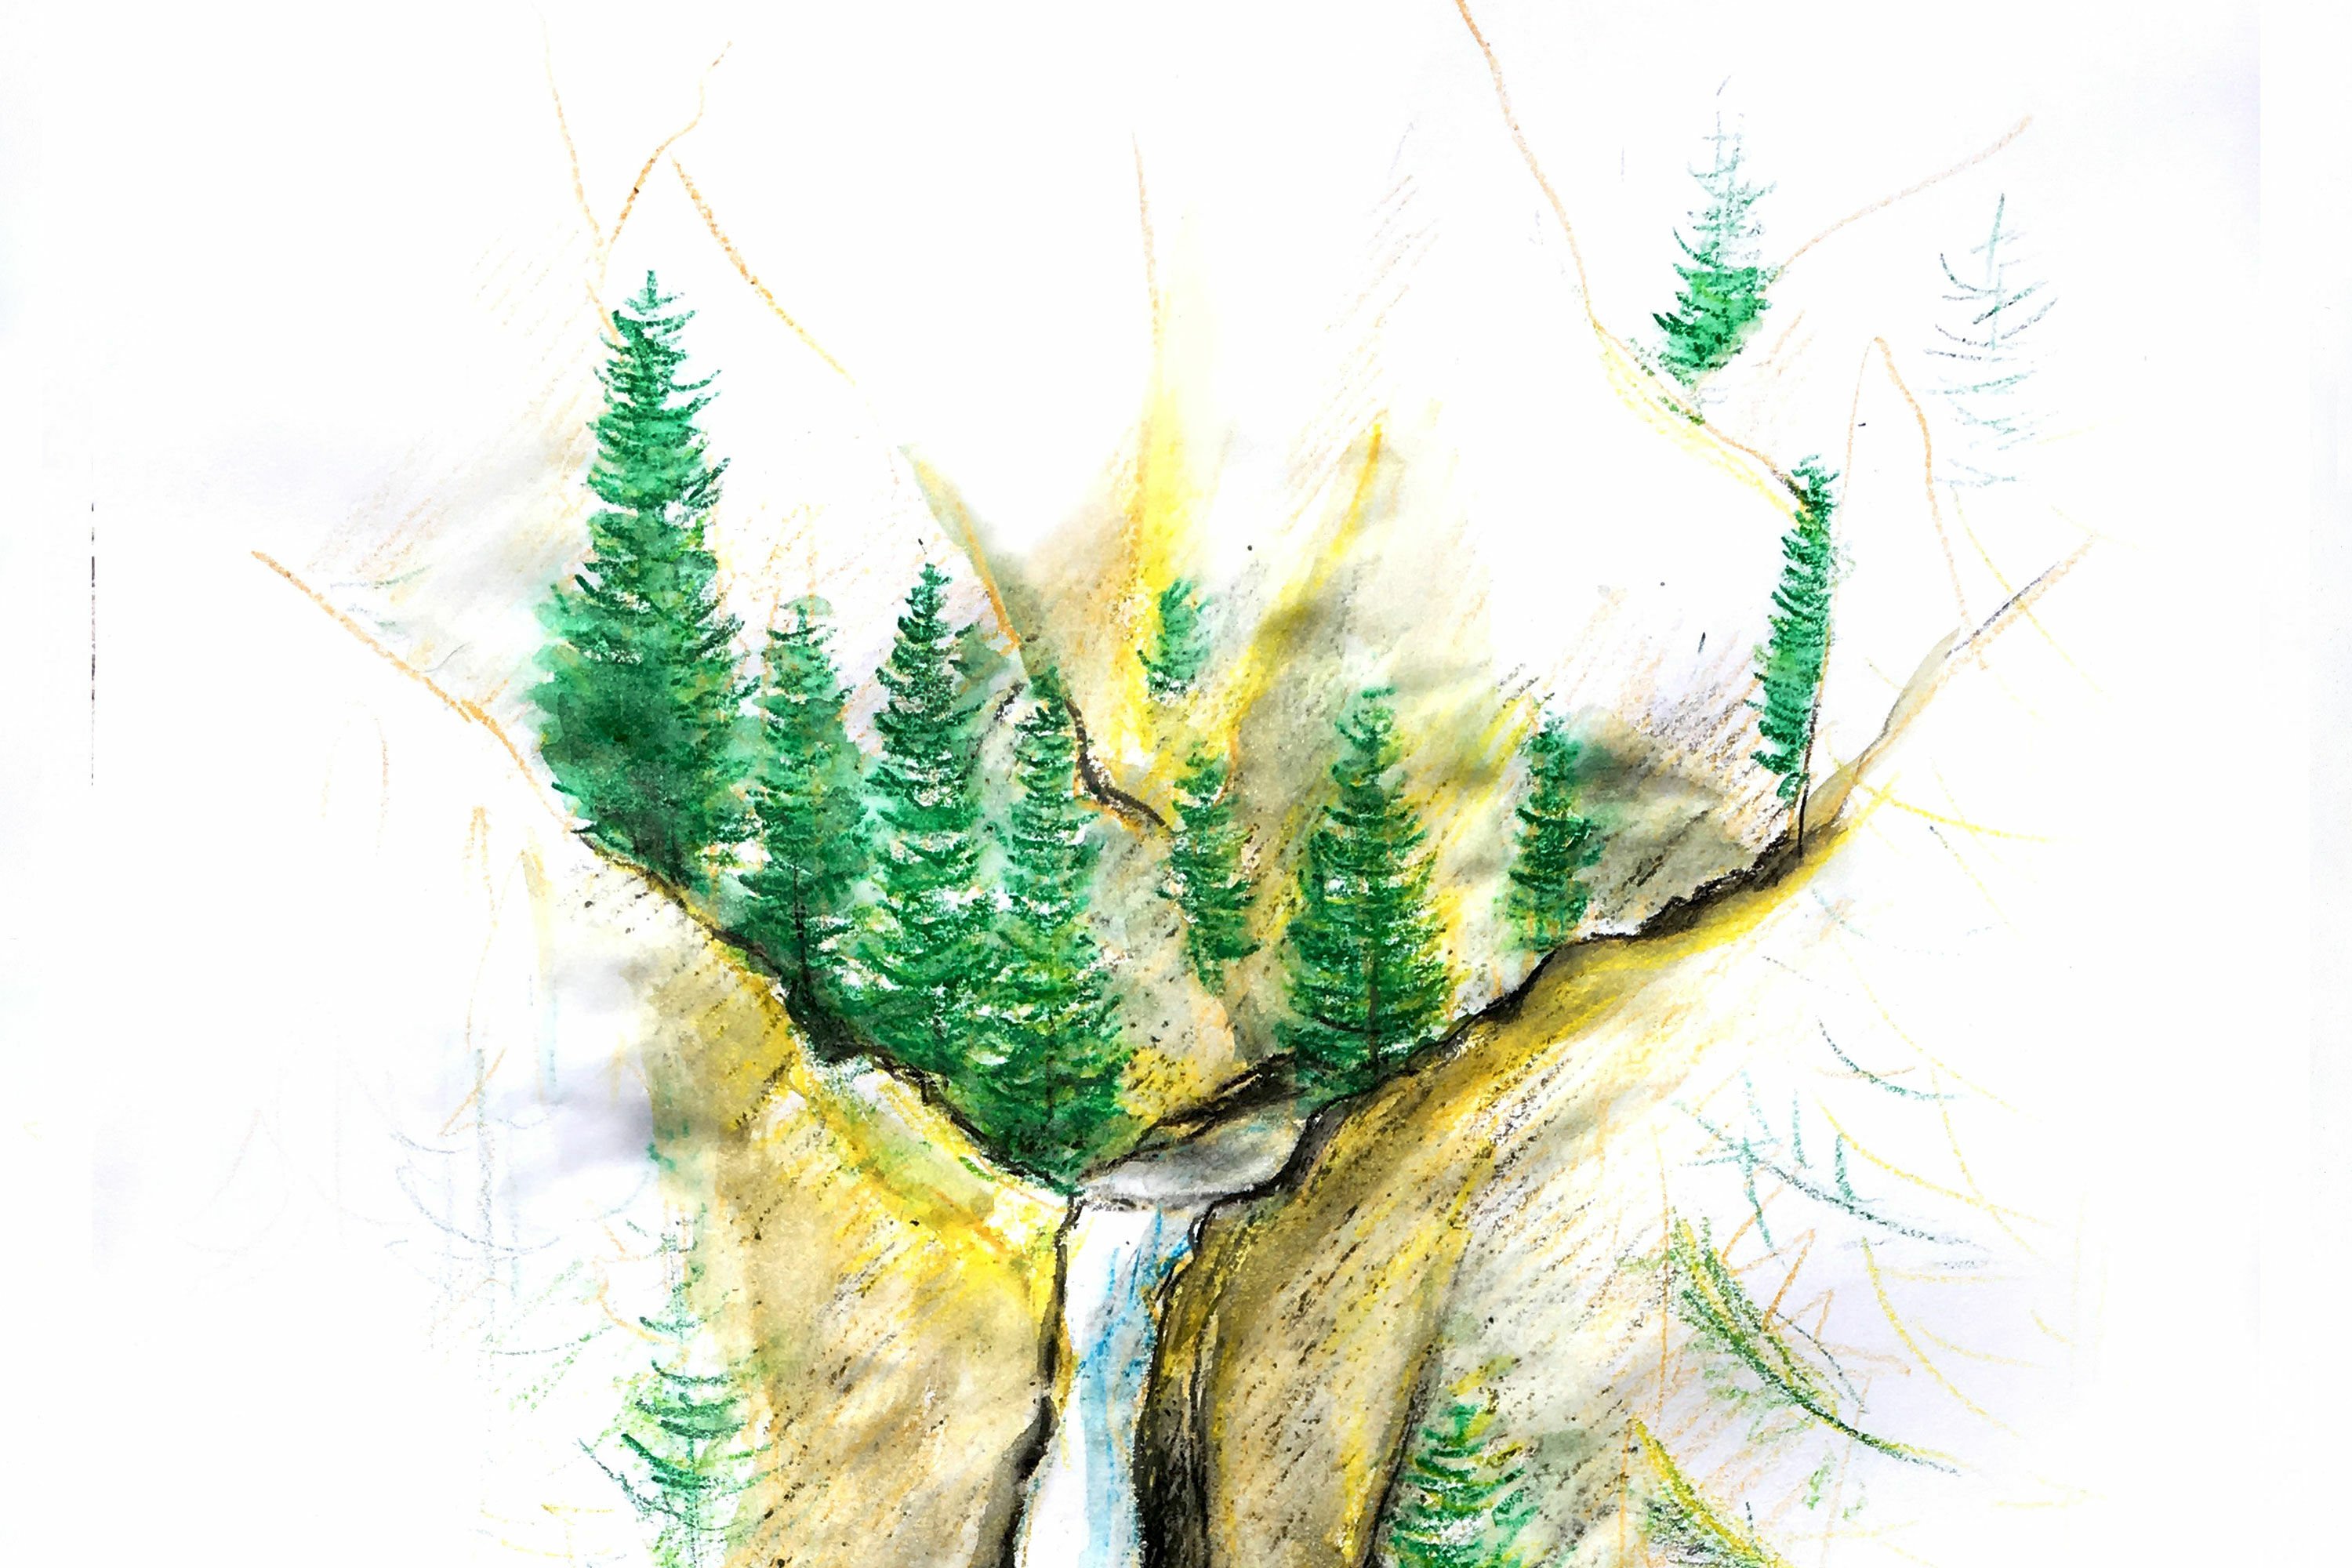 ArtStation - Waterfall (landscape) Pencil Sketch